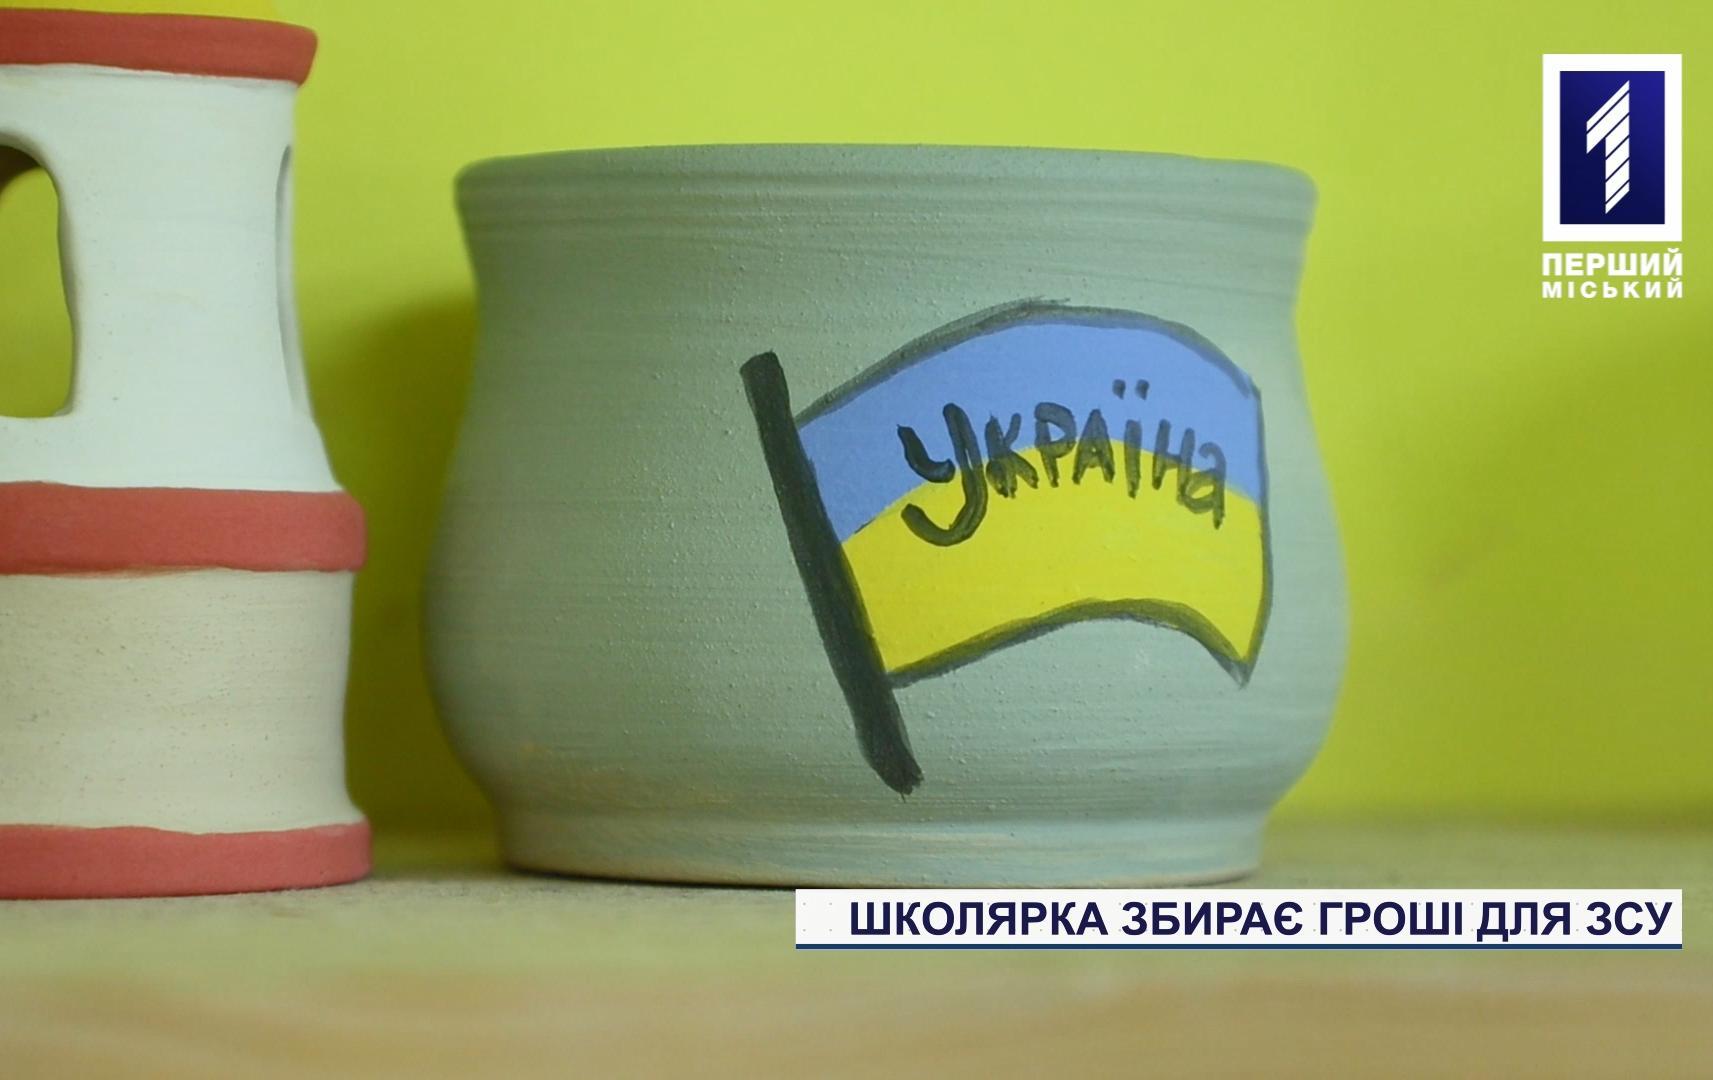 Школьница из Кривого Рога собирает деньги на нужды ВСУ, продавая керамические изделия собственного производства